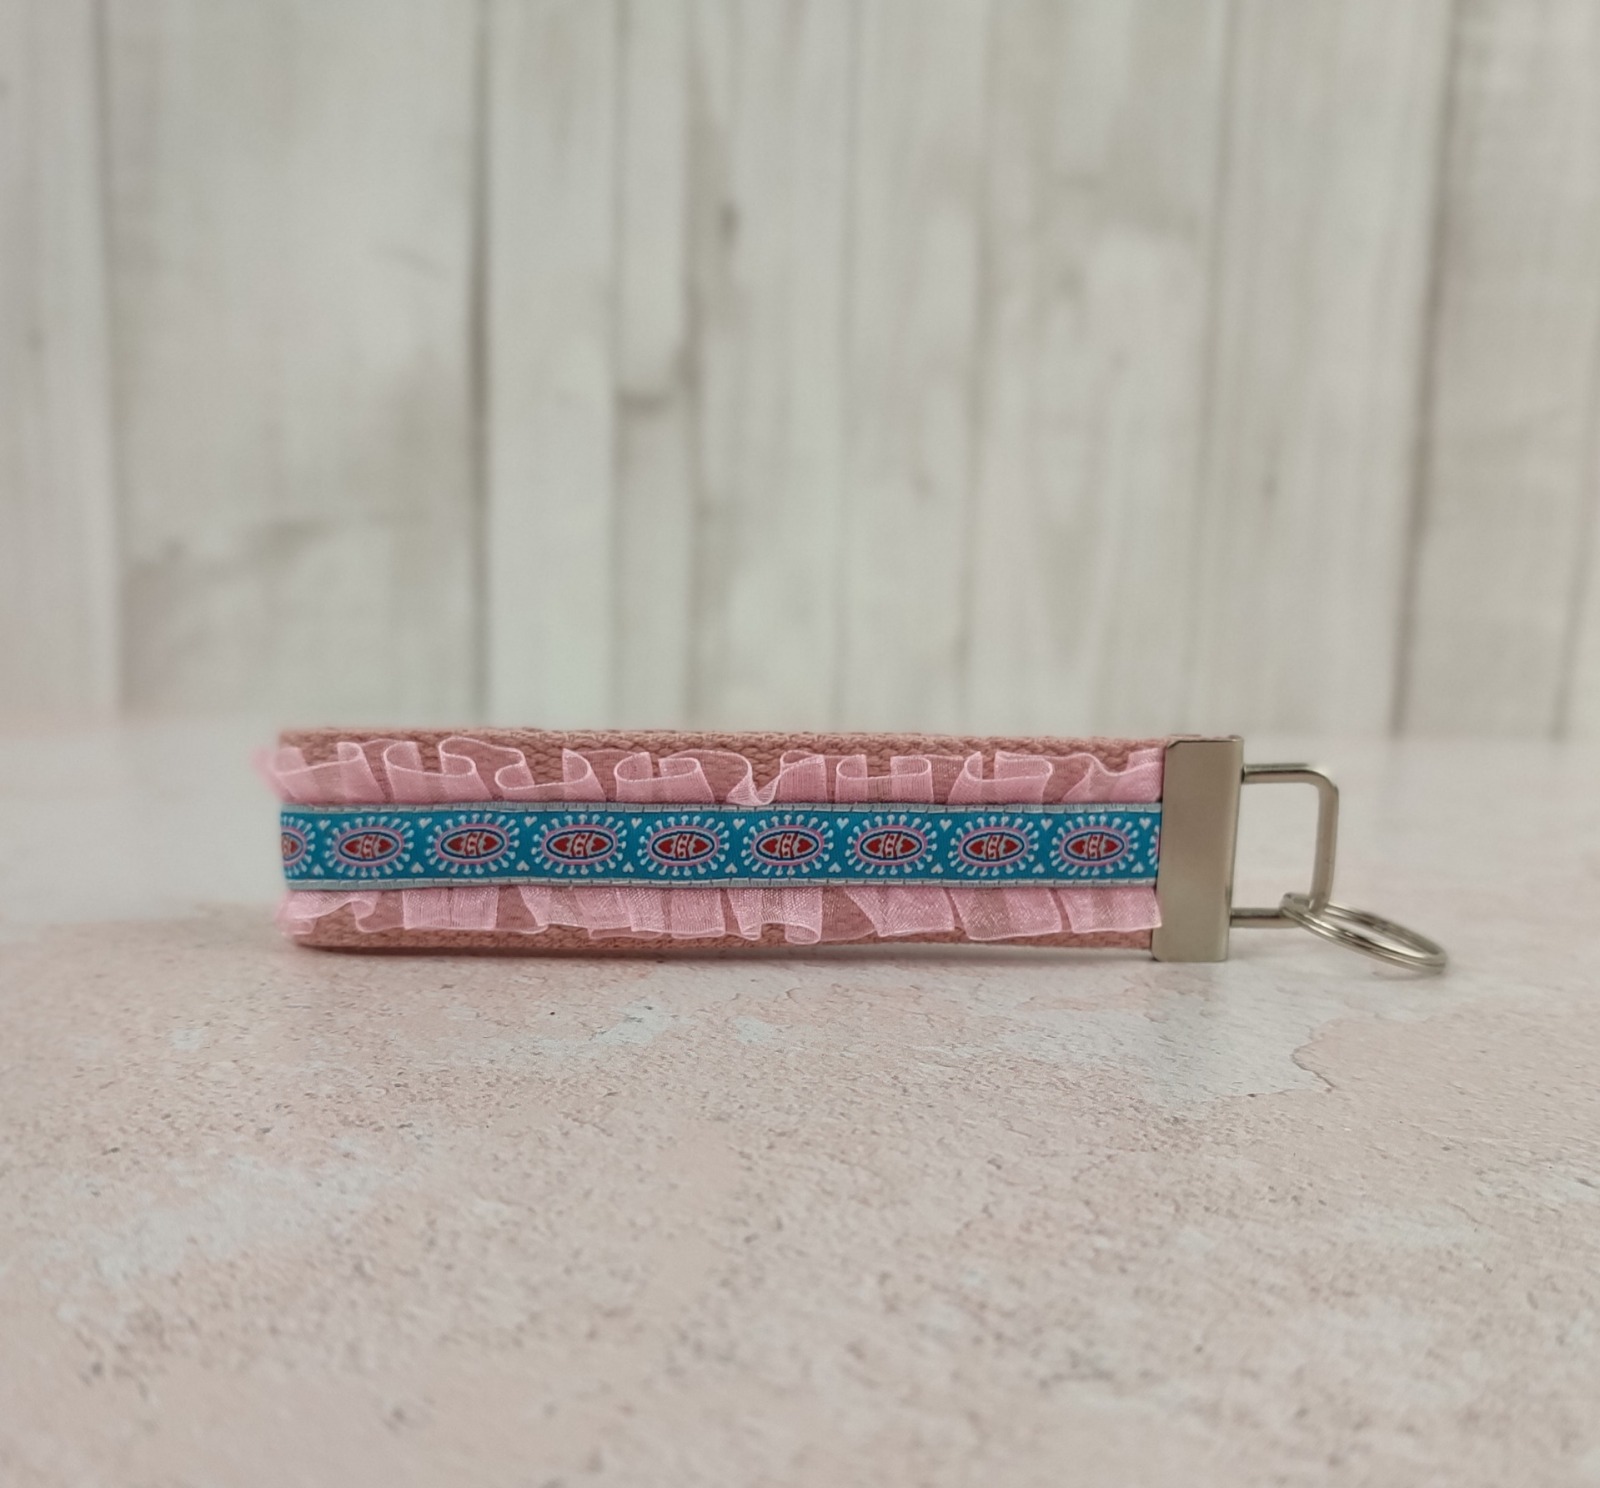 Kurzes Schlüsselband aus Gurtband in rosa - verziert mit Rüschen und Webband in petrol mit kleinen Herzchen